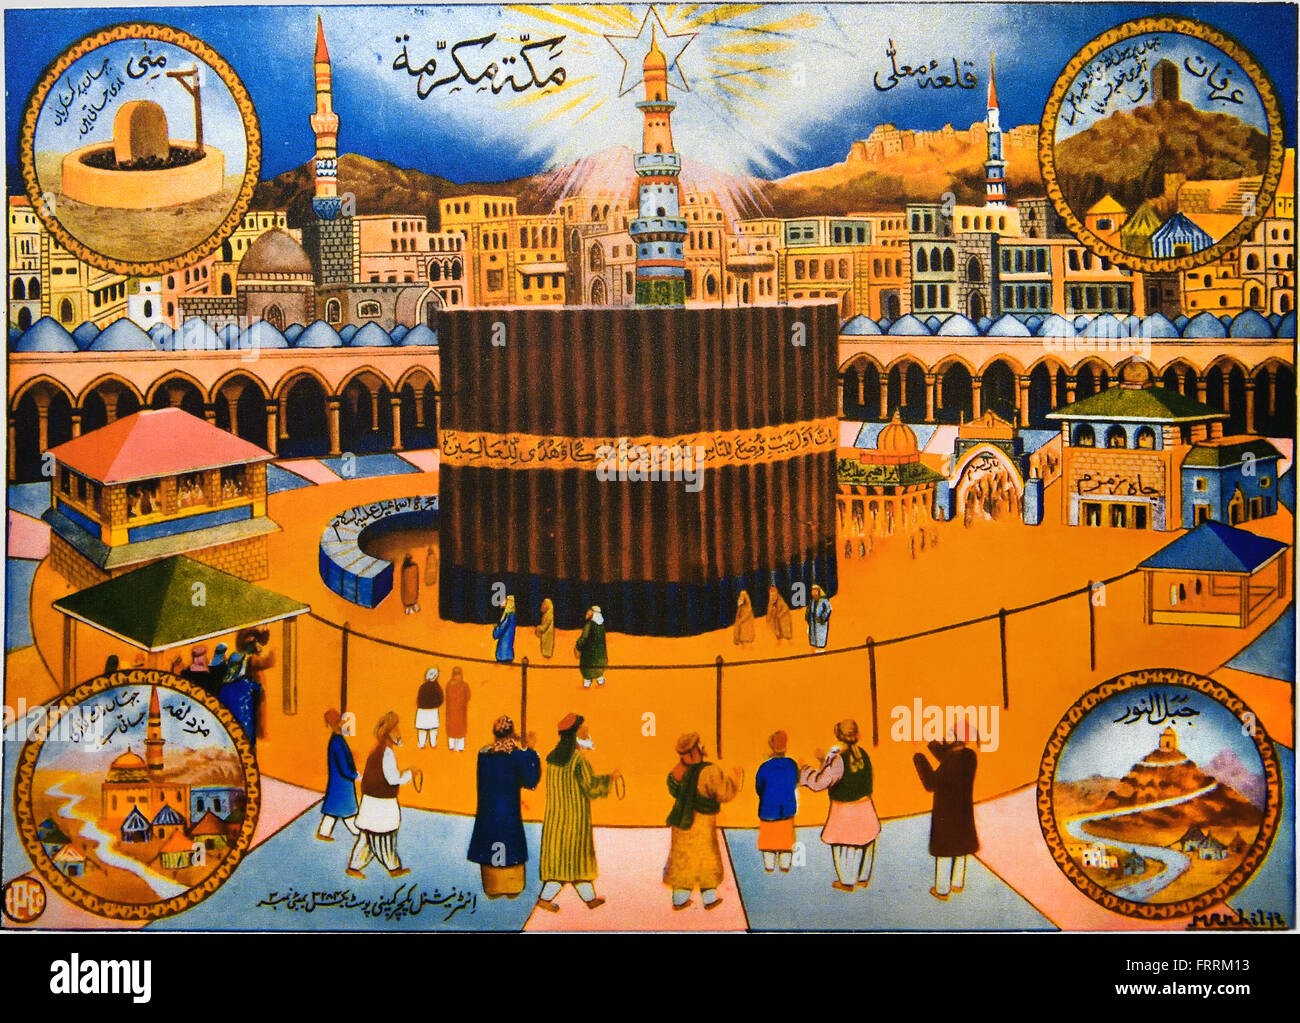 Stampa raffigurante il Ka'aba ( Kaaba ) alla Mecca 1930-1950 India indiano ( immagine religiosa della Kaaba, il santuario musulmano della Mecca ) Hejaz in Arabia Saudita Foto Stock